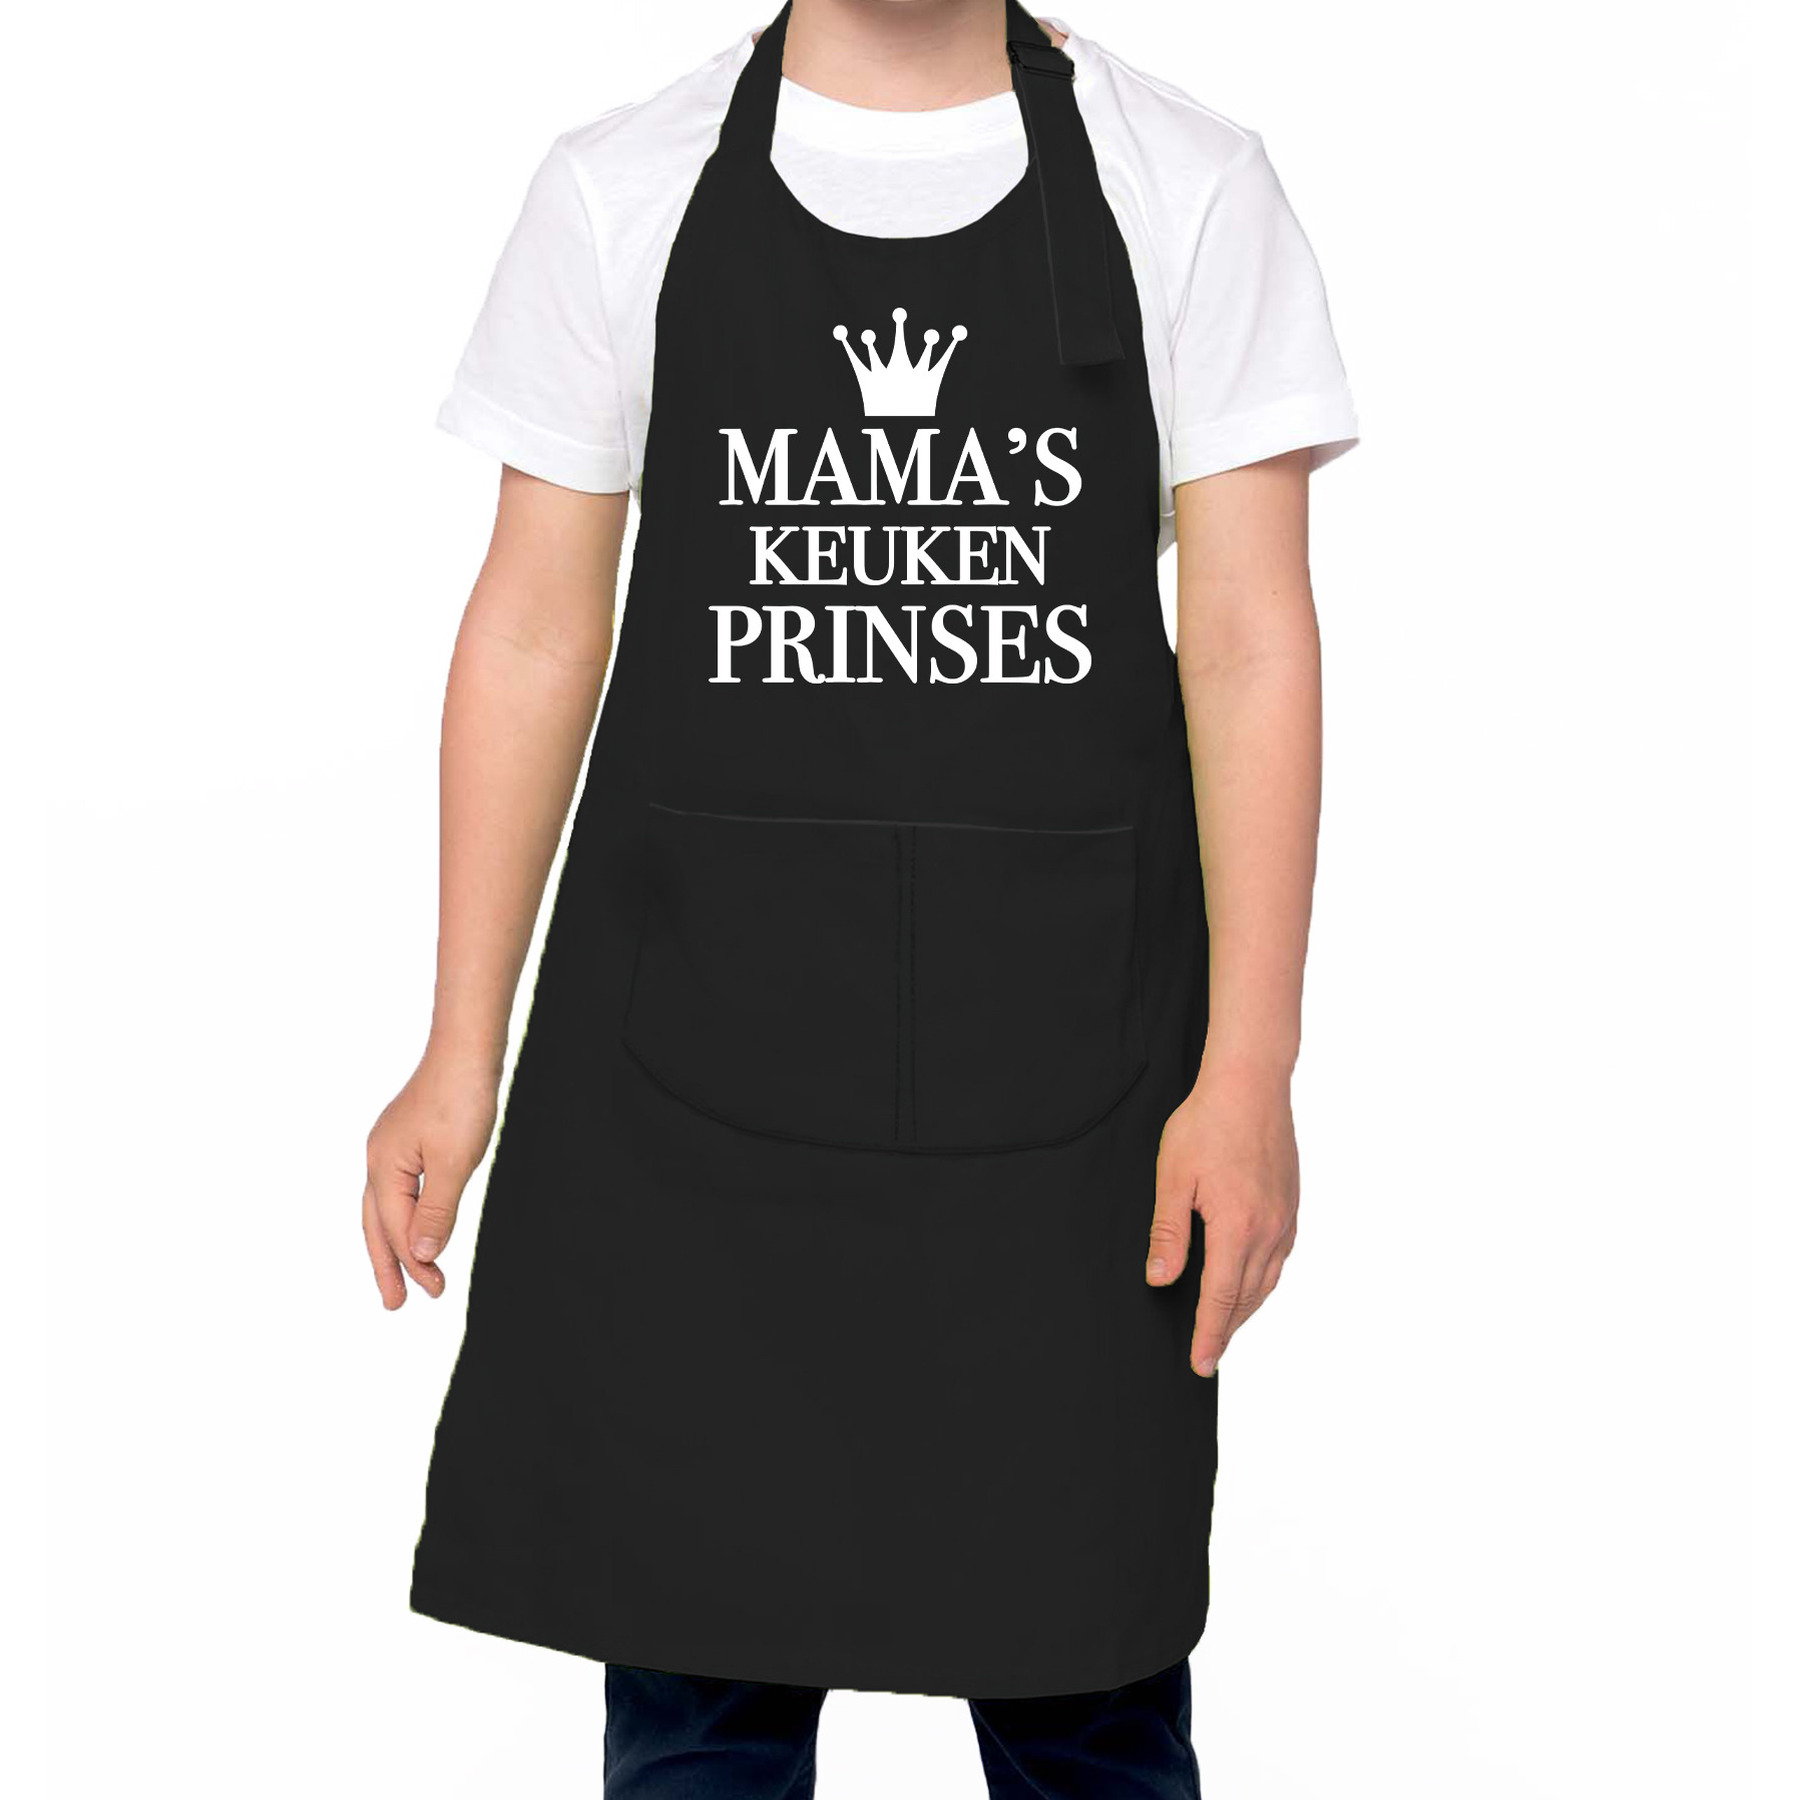 Mama s keukenprinses Keukenschort kinderen/ kinder schort zwart voor meisjes